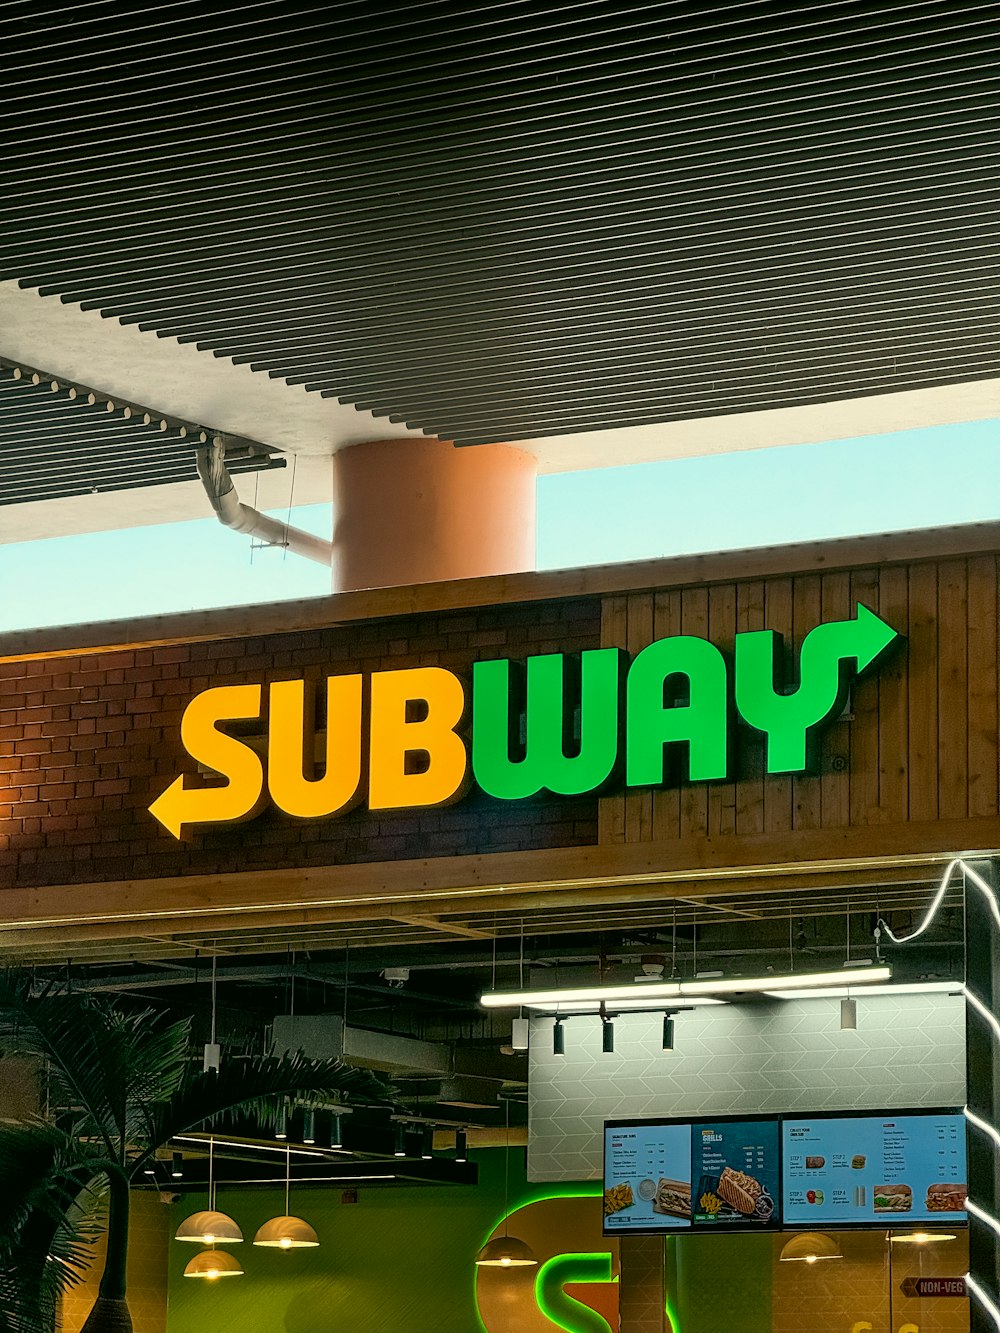 a subway sign above a subway entrance